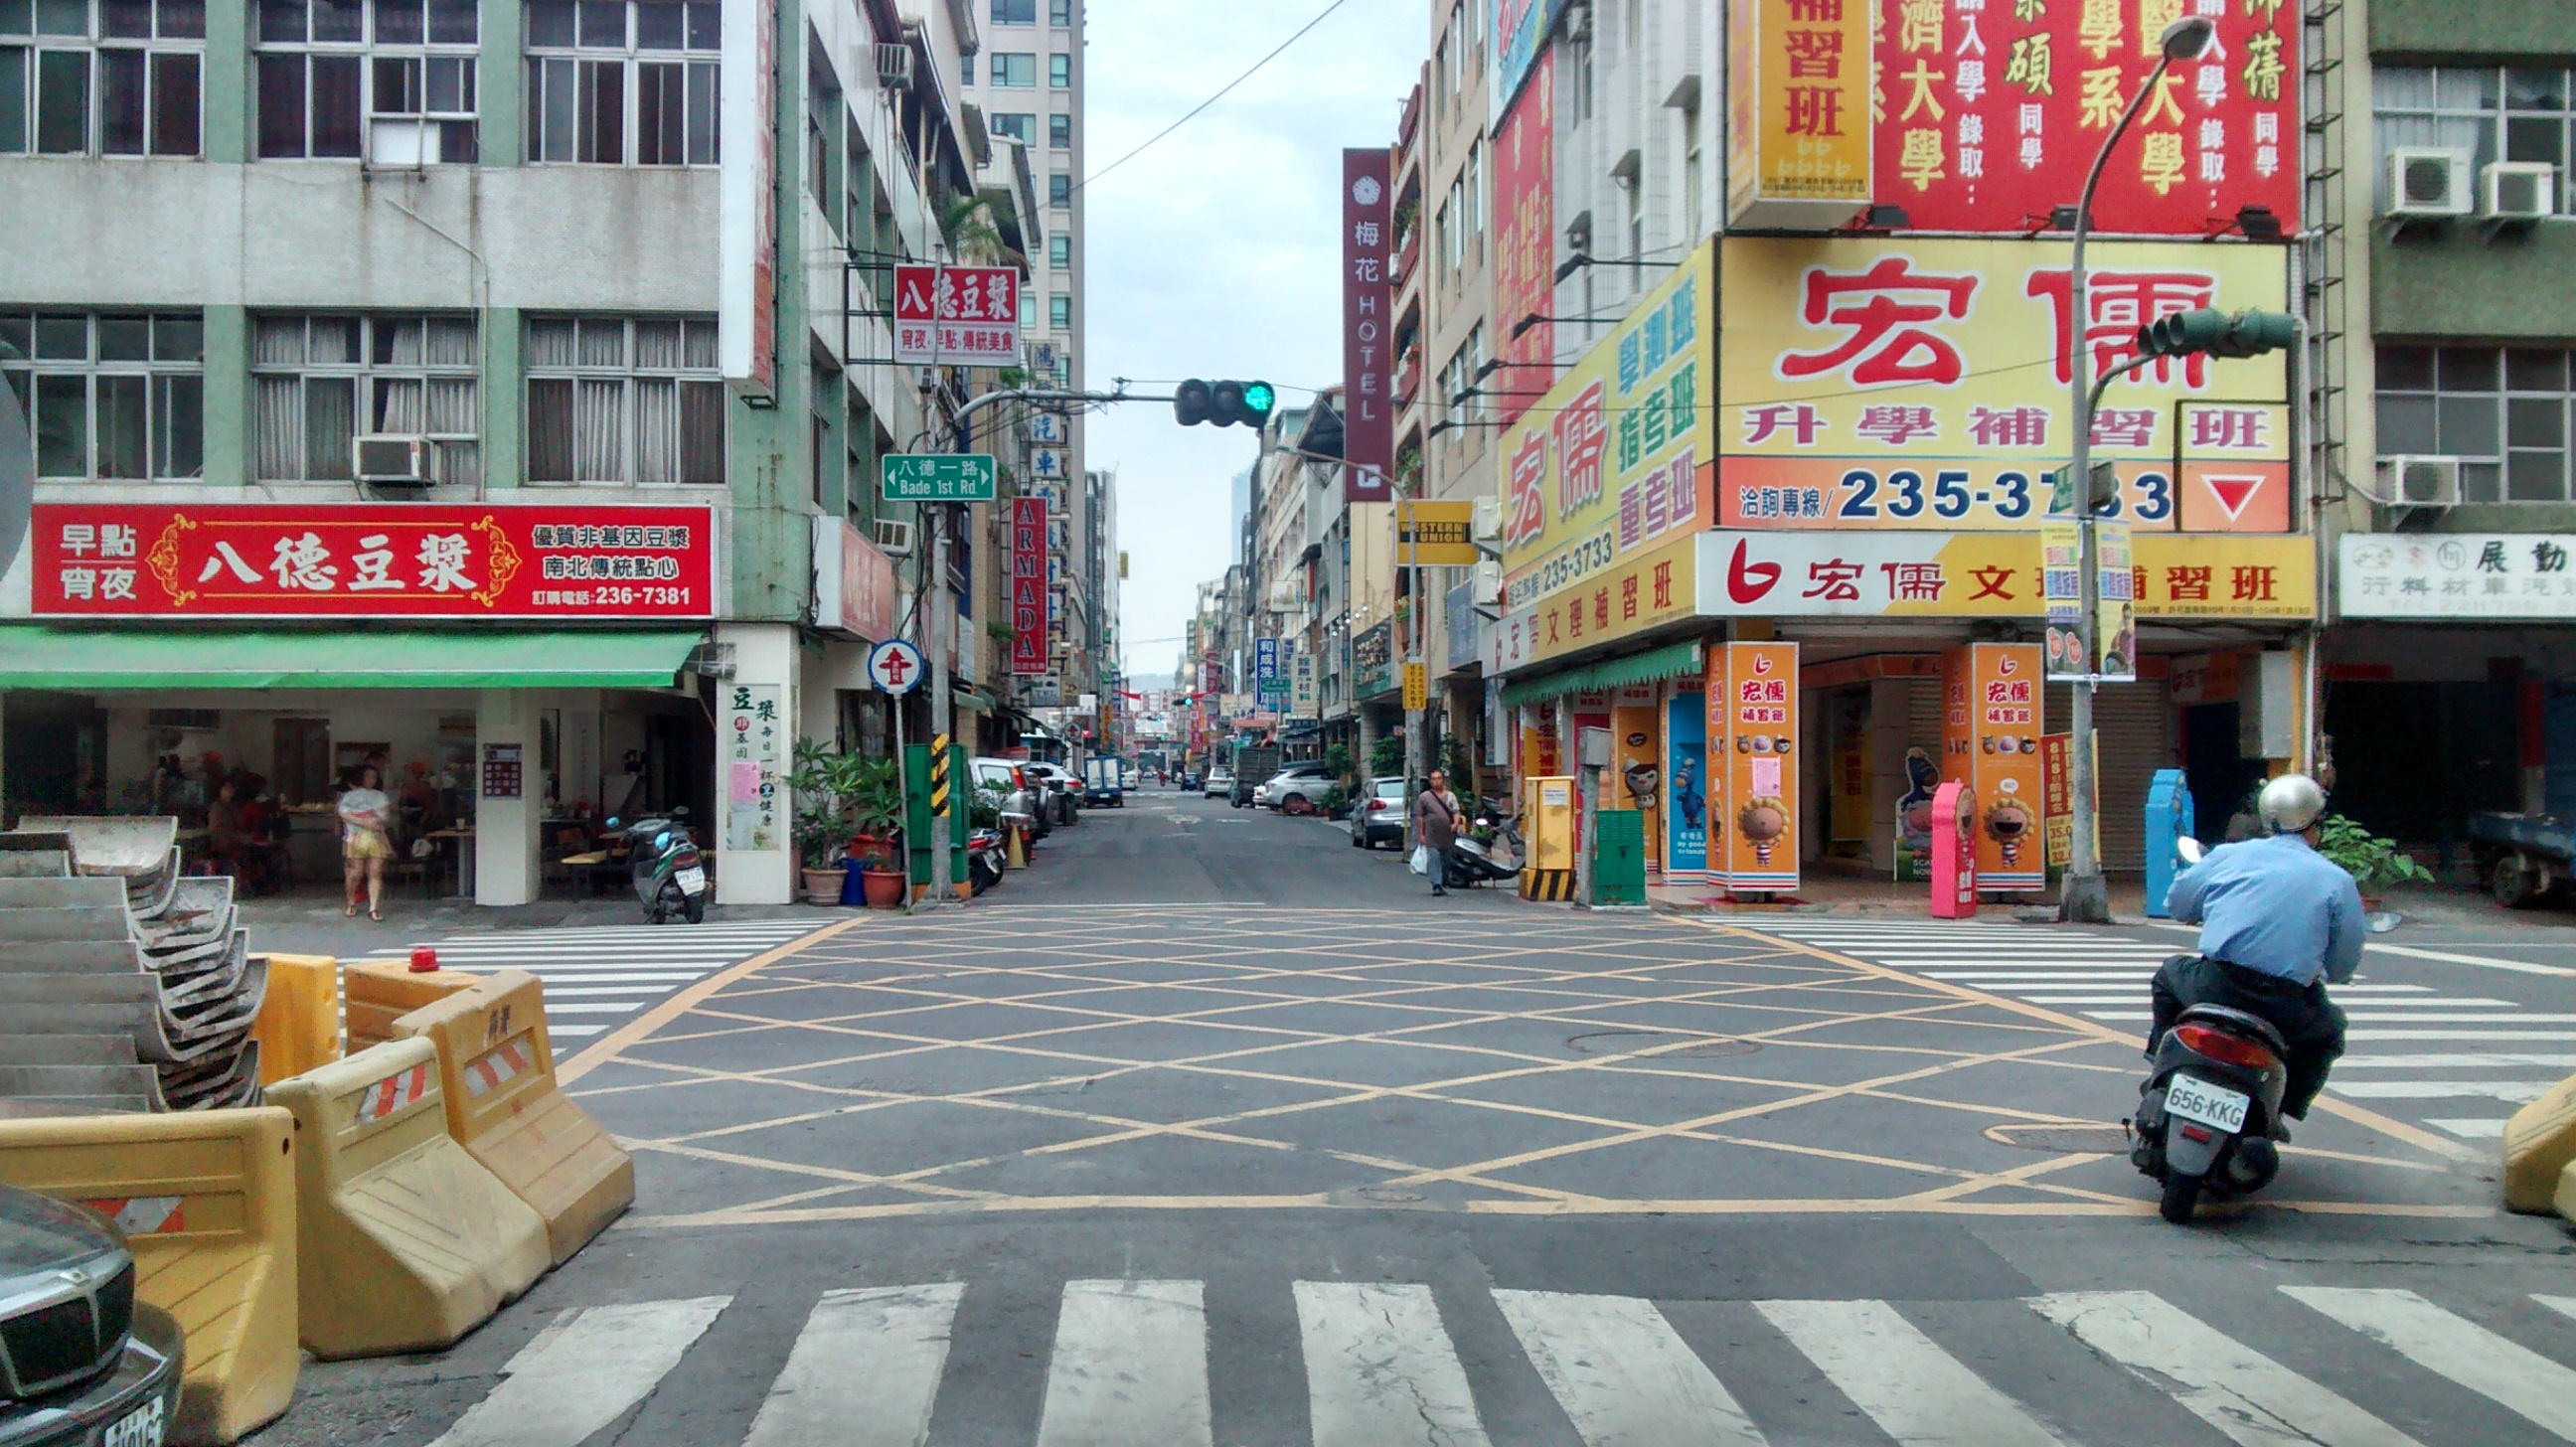 A Kaohsiung
street